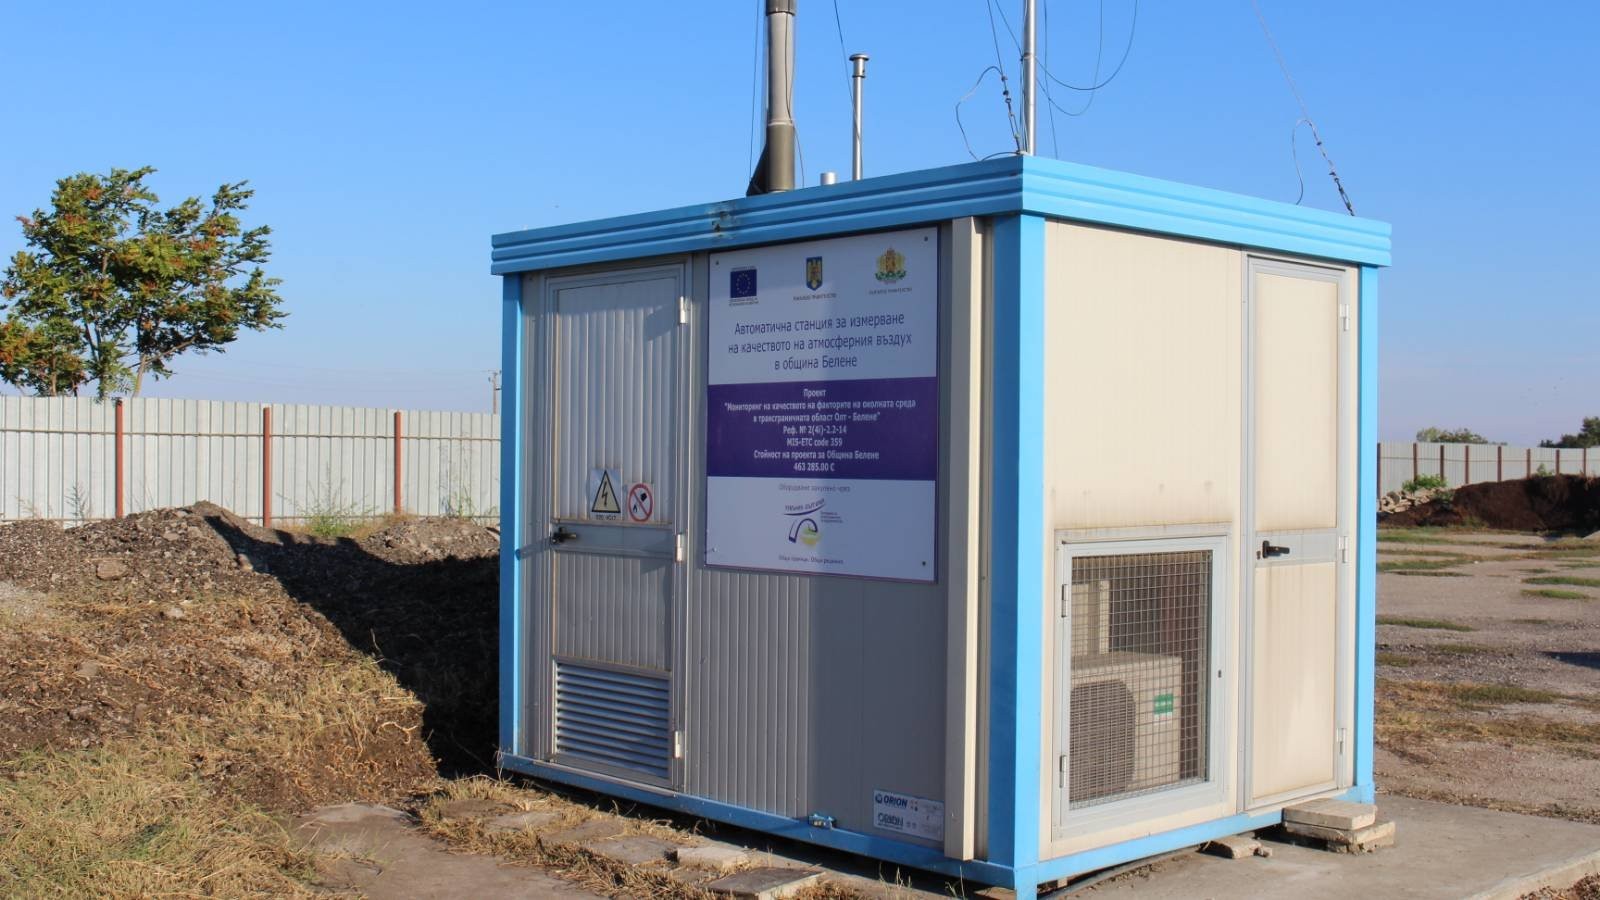 Още една автоматична станция за въздуха ще действа от днес в Русе /обновена/